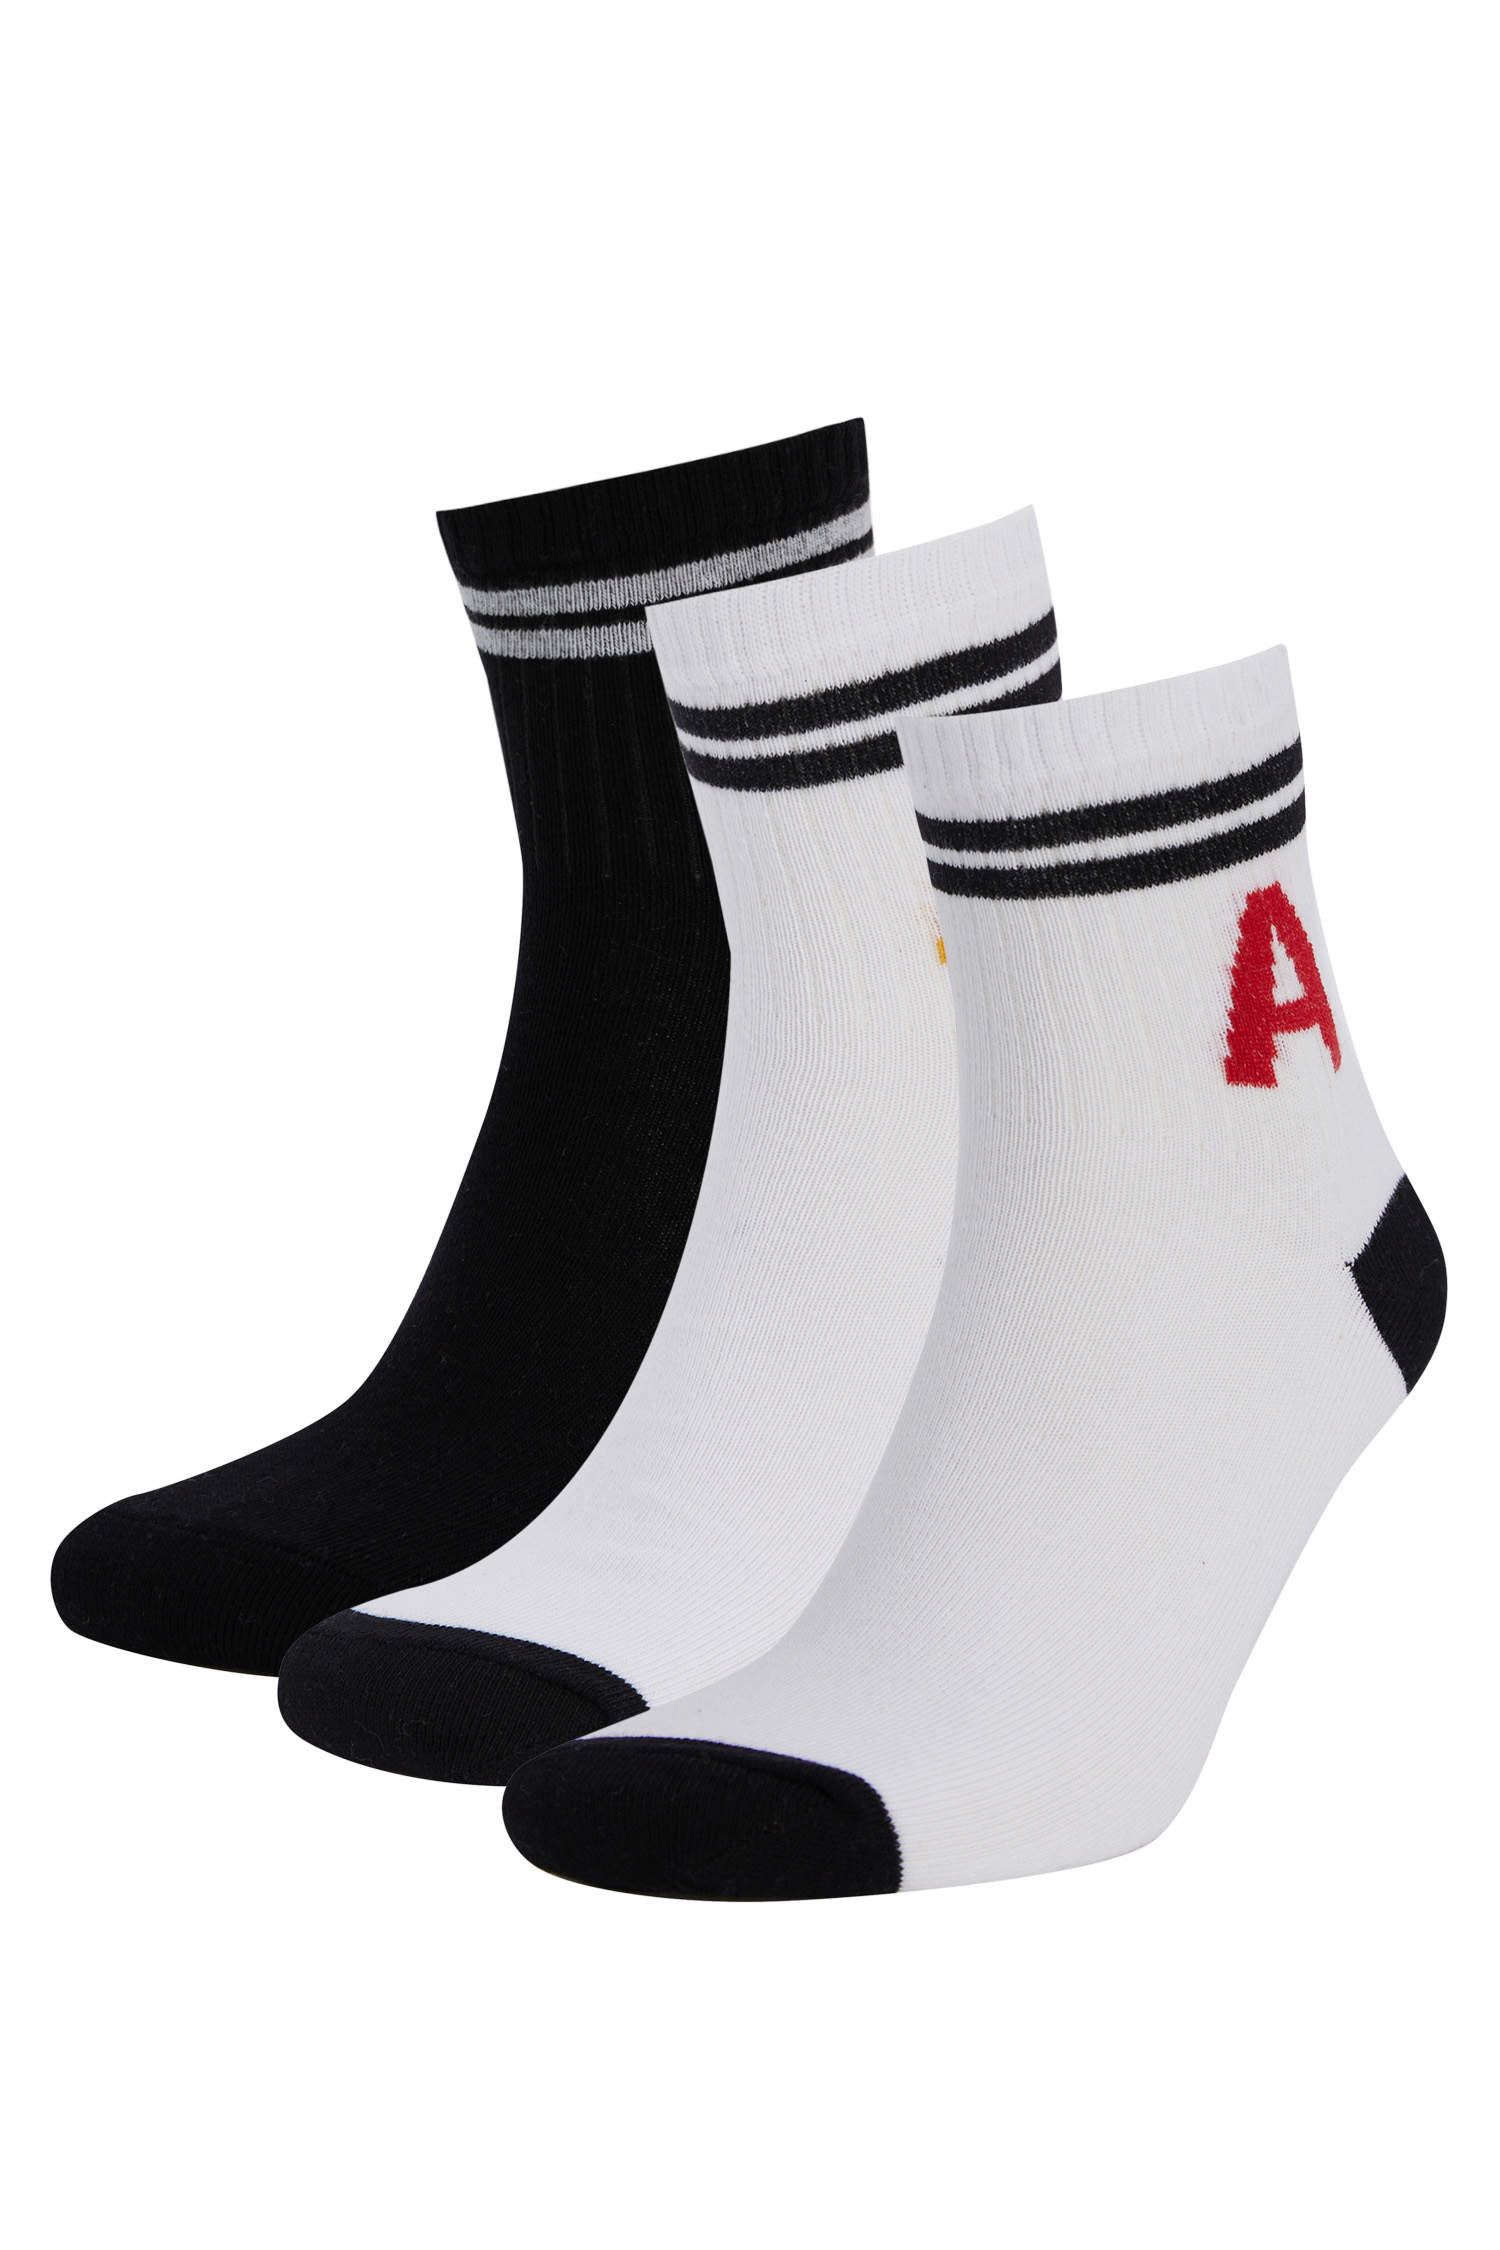 Defacto Harf İşlemeli 3'lü Soket Tenis Çorabı. 3